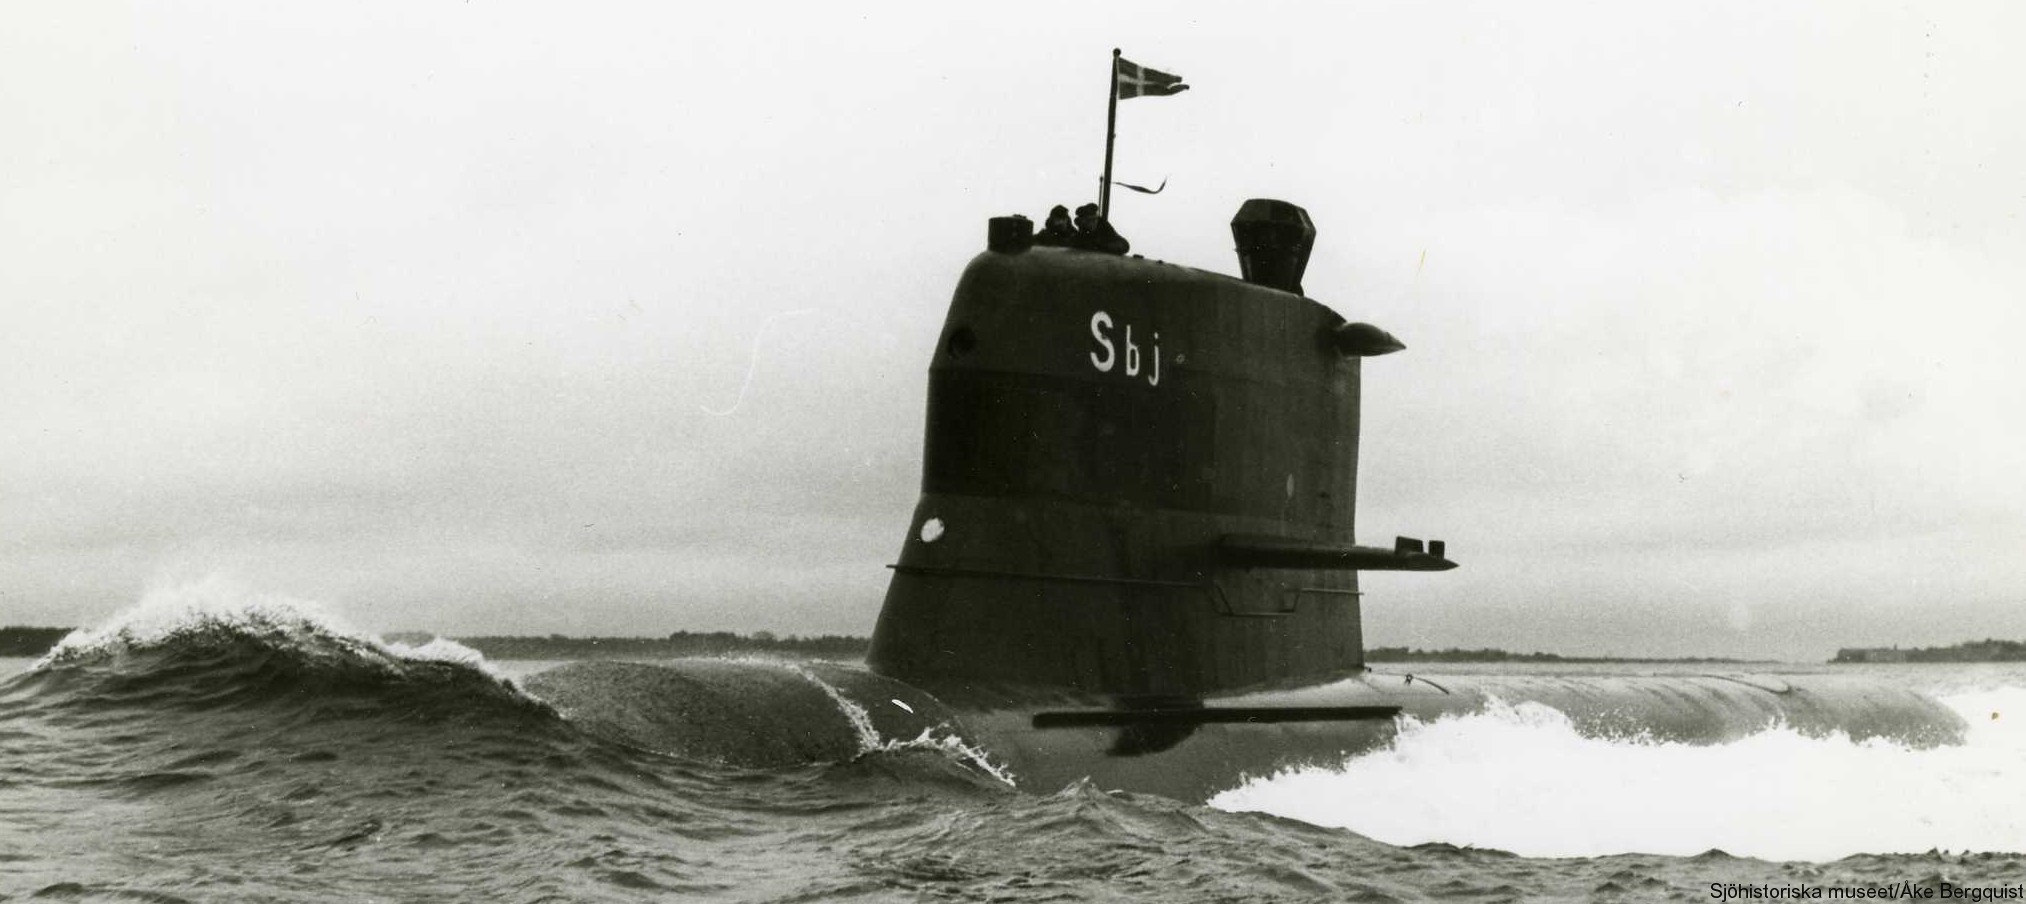 hswms hms sjöbjörnen sbj sjöormen a11 class submarine ssk swedish navy svenska marinen försvarsmakten 02